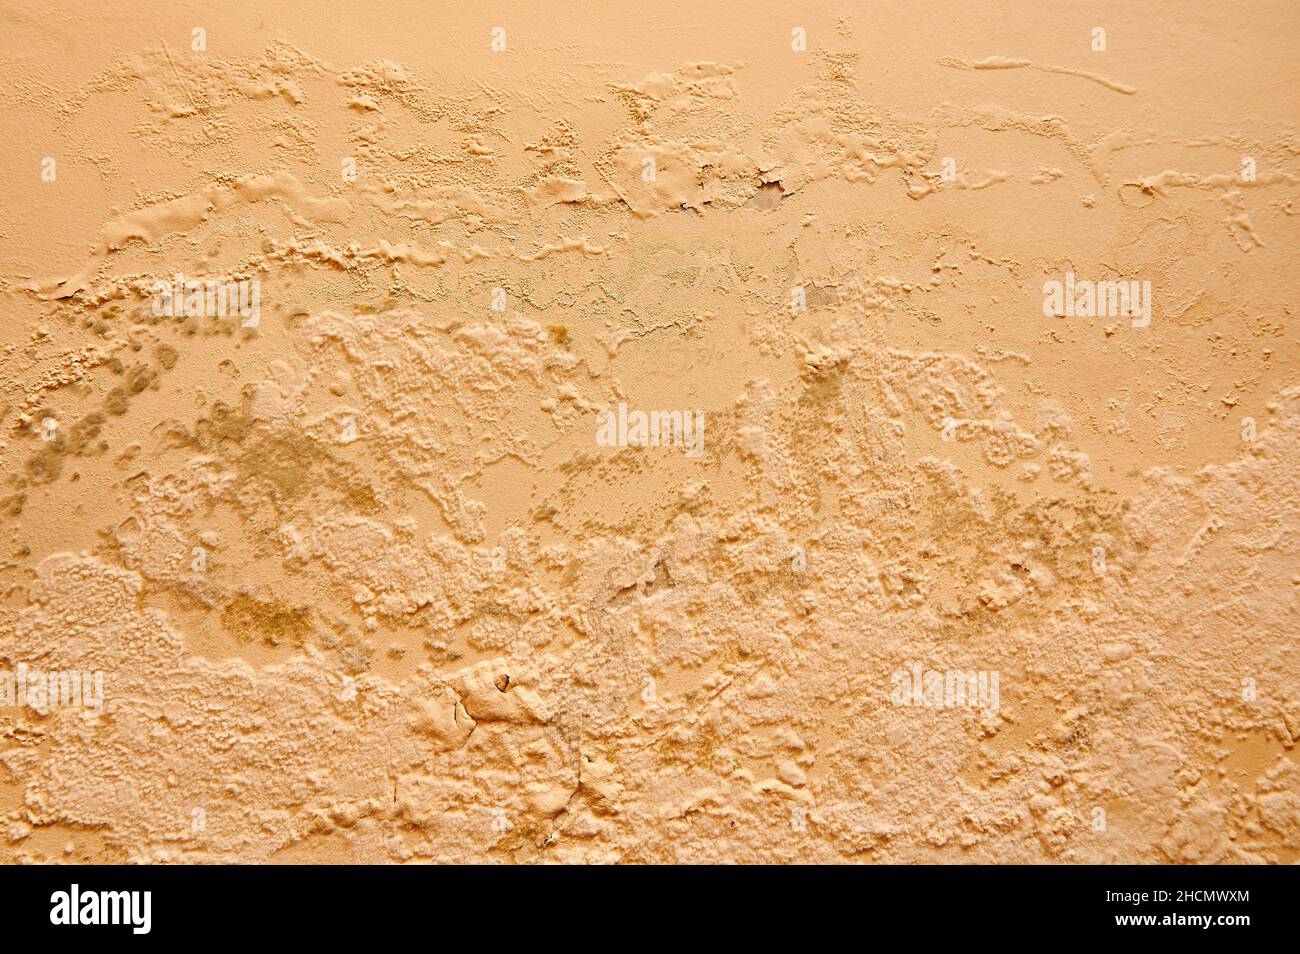 Une humidité excessive provoque la moisissure et l'écaillage des murs de peinture, comme des fuites d'eau de pluie. Banque D'Images